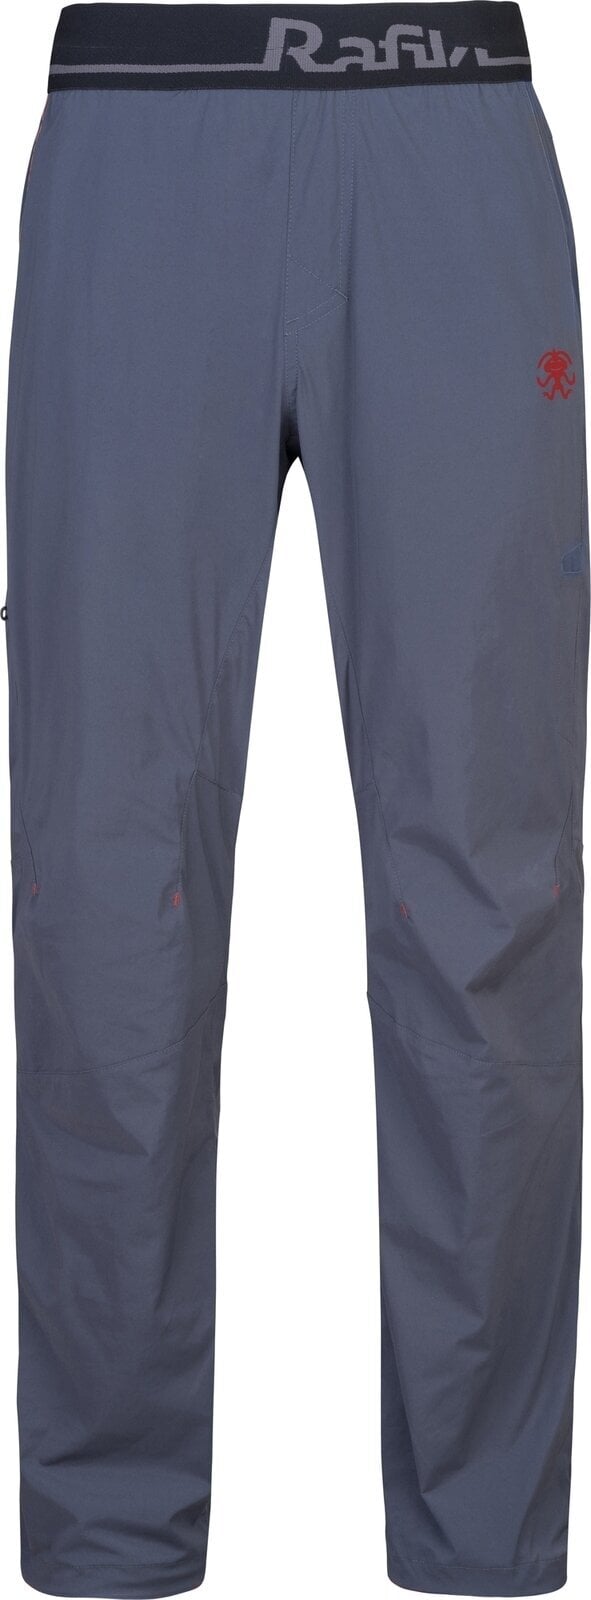 Outdoor Pants Rafiki Drive Man Pants India Ink XL Outdoor Pants